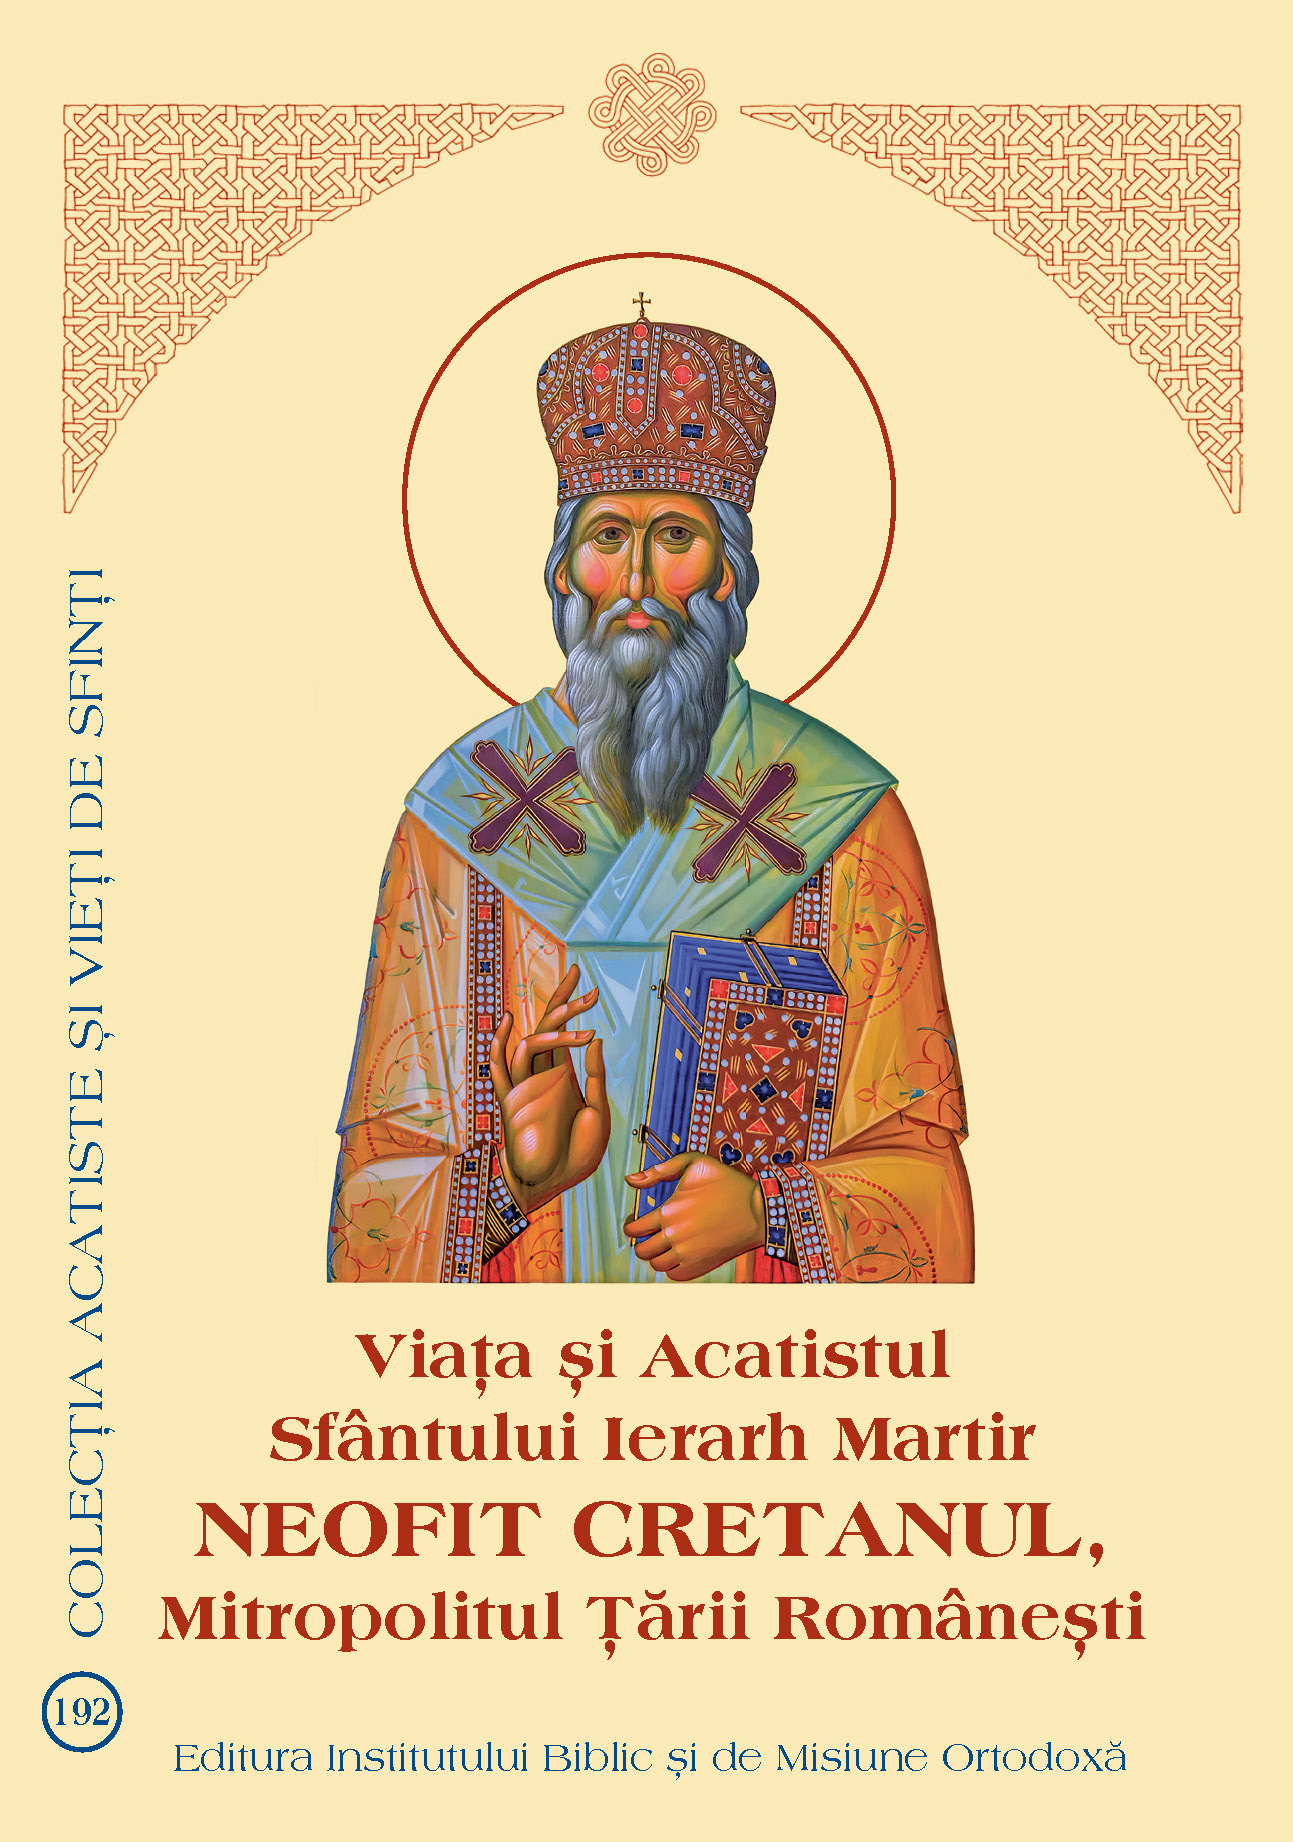 Viaţa şi Acatistul Sfântului Ierarh Martir Neofit Cretanul, Mitropolitul Țării Românești